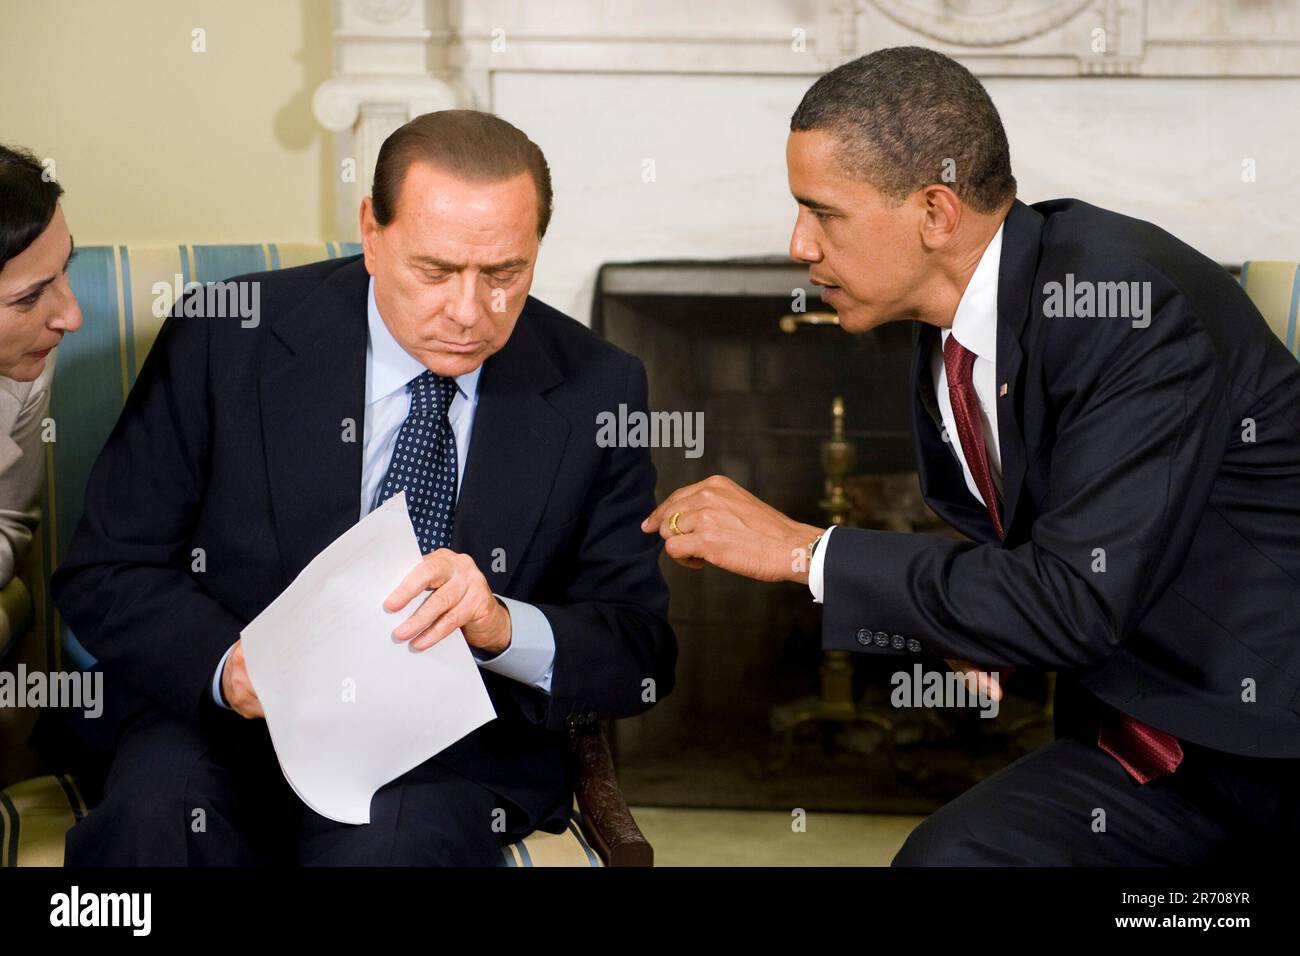 Washington, DC - 15. Juni 2009 -- US-Präsident Barack Obama (R) spricht vor dem Übersetzer von Ministerpräsident Silvio Berlusconi von Italien, bevor er am Montag, 15. Juni 2009 im Oval Office des Weißen Hauses vor der Presse spricht. Die beiden Staats- und Regierungschefs trafen sich im Vorfeld des G8-Gipfels, der nächsten Monat in Italien stattfinden wird.Kredit: Matthew Cavanaugh - Pool über CNP Stockfoto